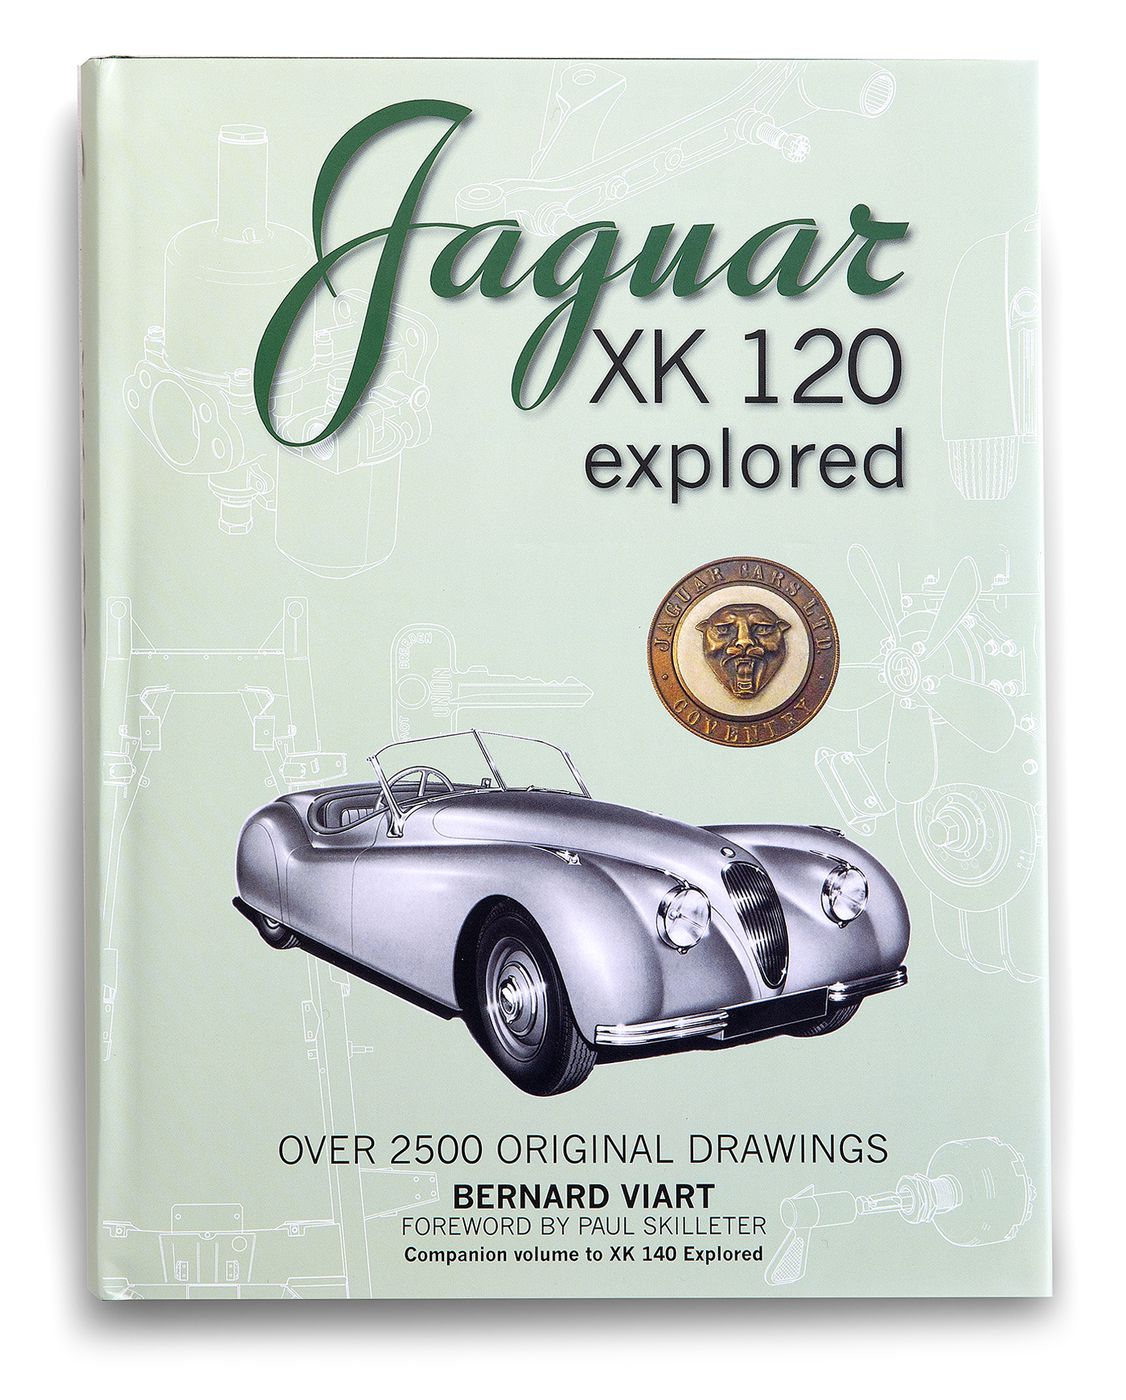 Jaguar XK120 Explored
Jaguar XK120 Explored
Jaguar XK120 Explore